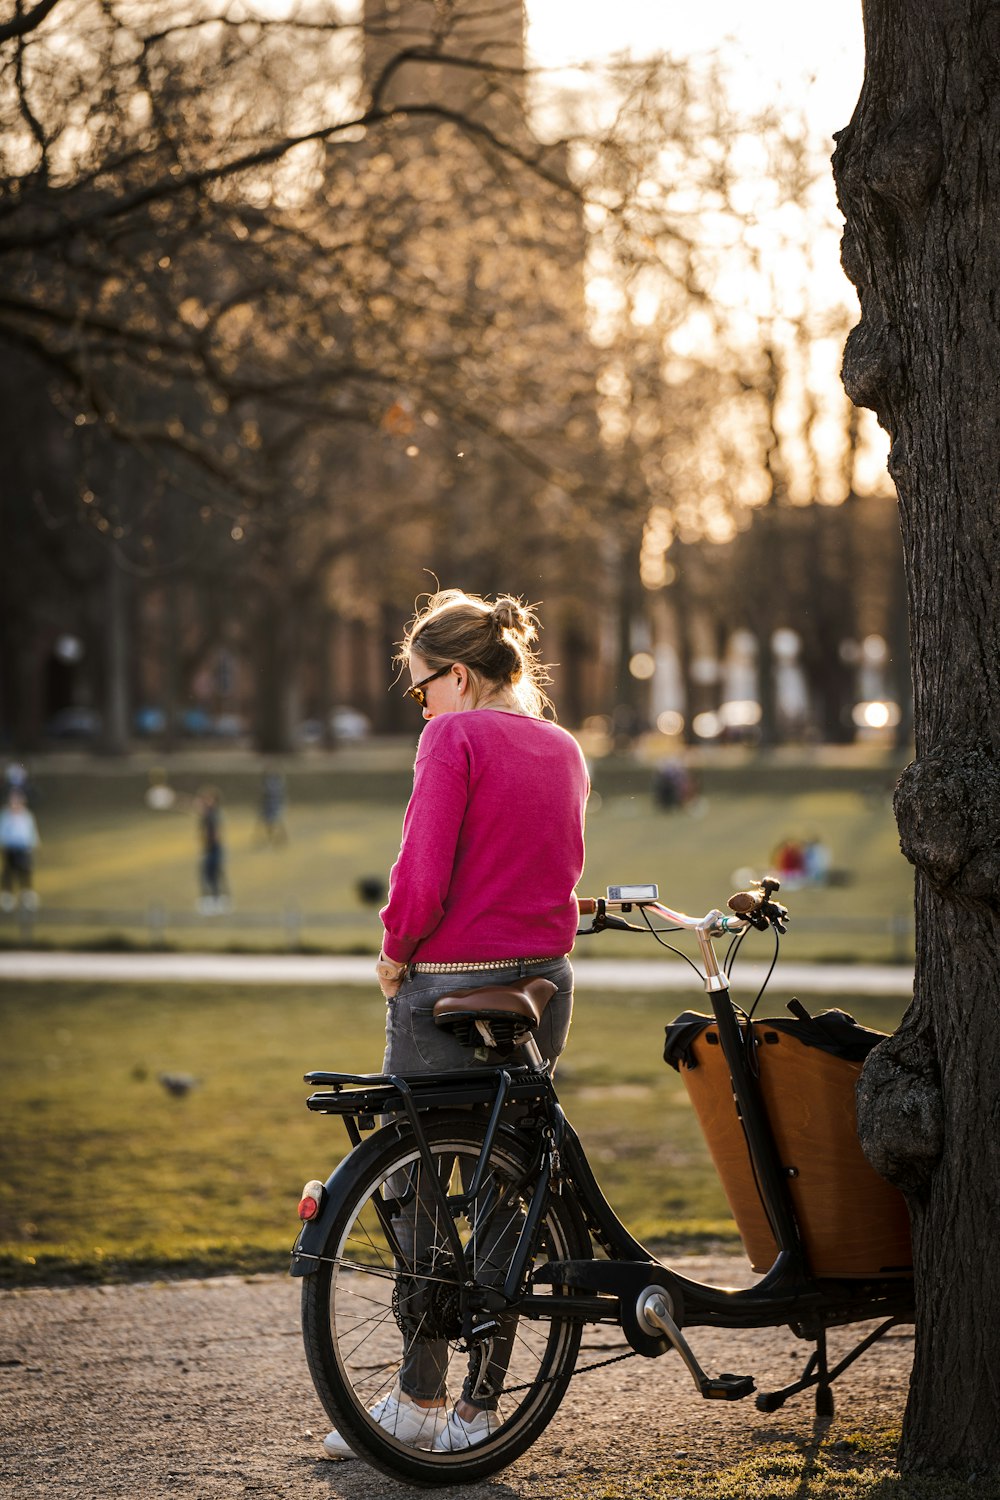 보라색 긴팔 셔츠를 입은 여자는 낮 동안 도로에서 자전거를 타고 있다